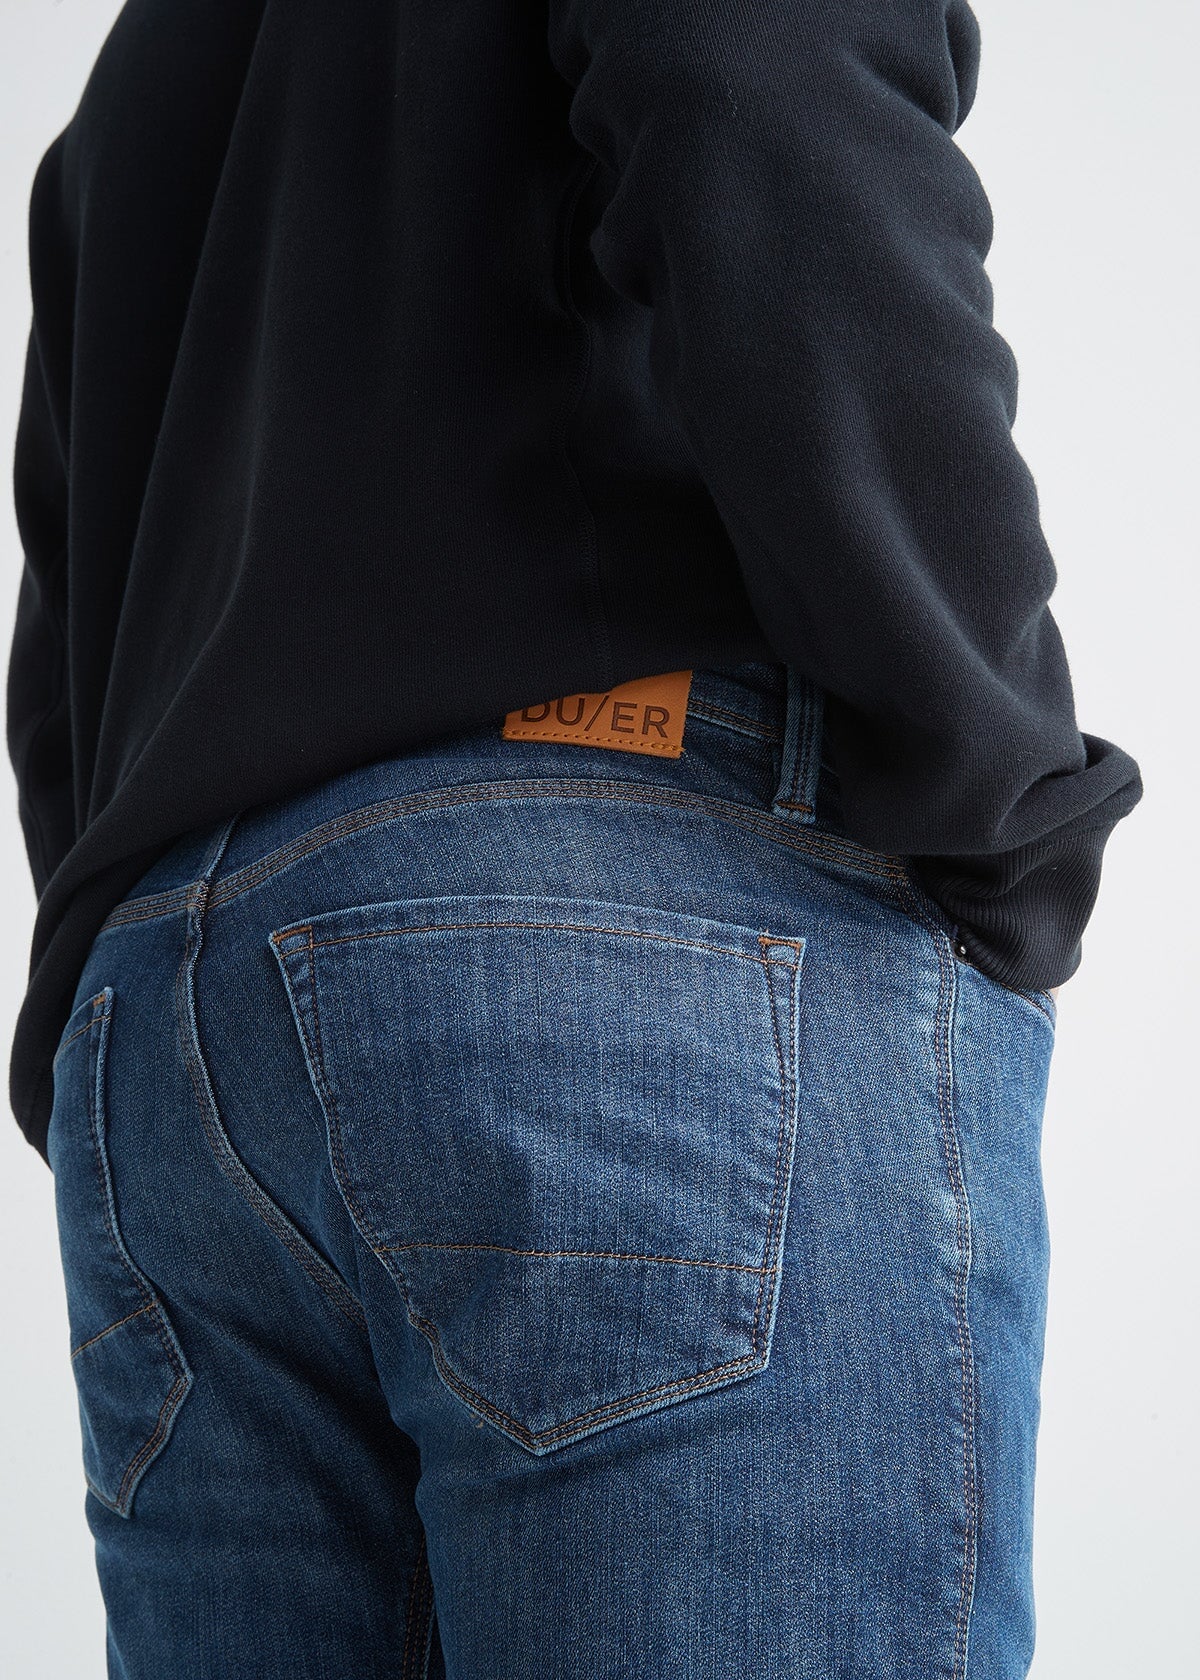 Work n' Sport Men's Fleece Lined Denim Utility Jeans - GPS-BMFLDRDW-29x30